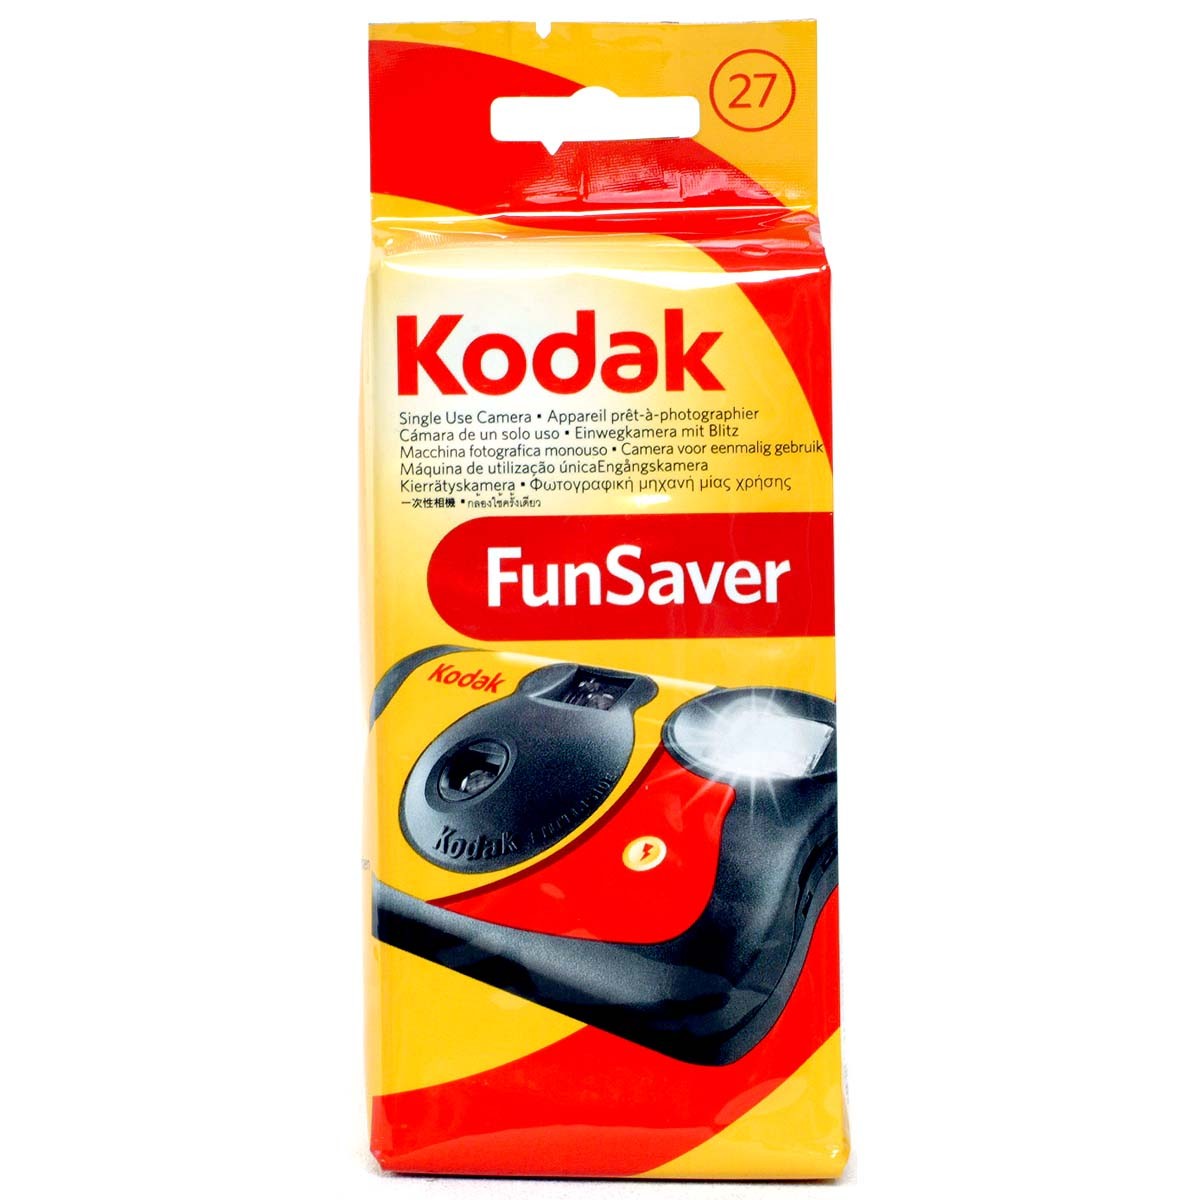 [3 шт ]ko Duck FunSaver 800-27 листов . flash есть линзы есть плёнка одноразовый камера ISO чувствительность 800 135/35mm*EK FUN-SAVER800 Kodak 041778617762